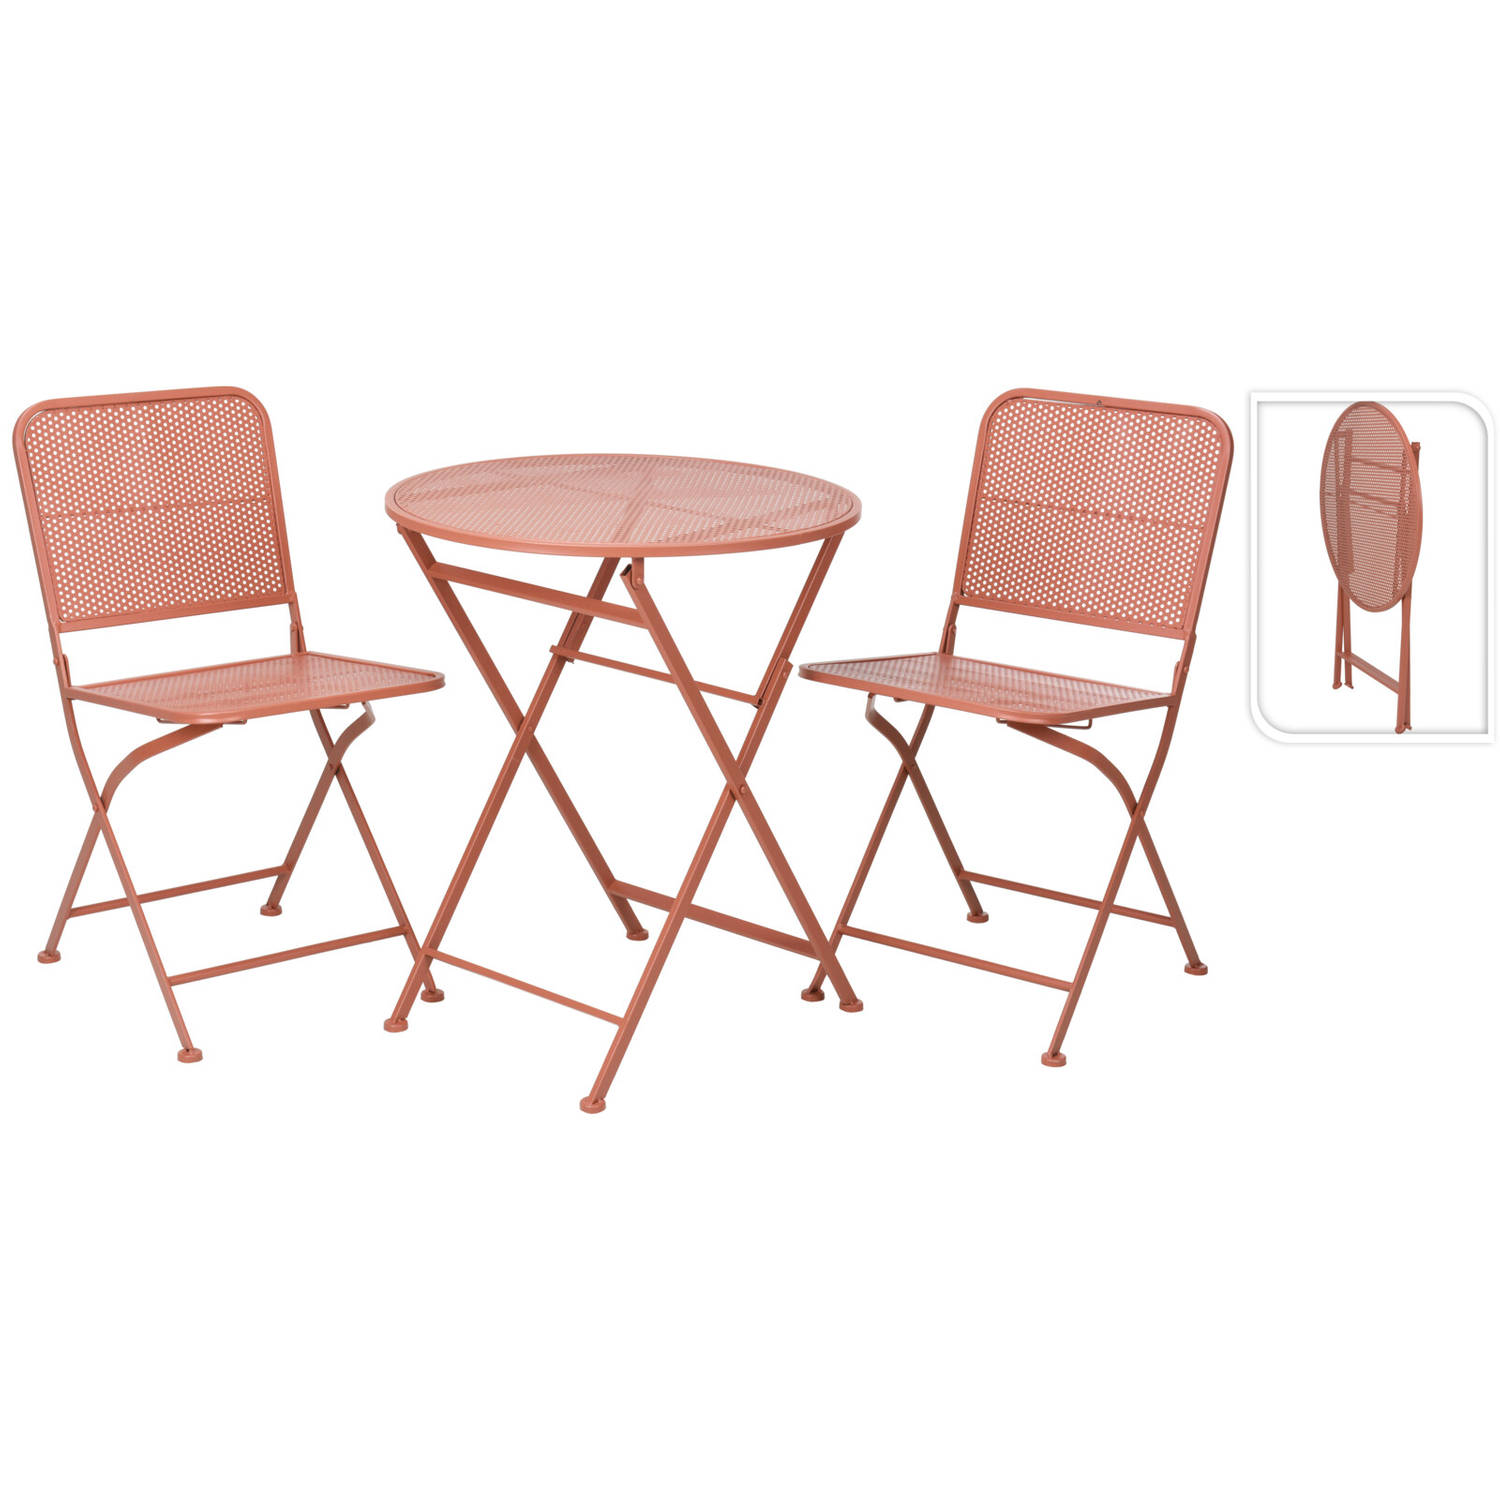 Relaxwonen - tuinset - bistroset - roze - tafel + 2 stoelen